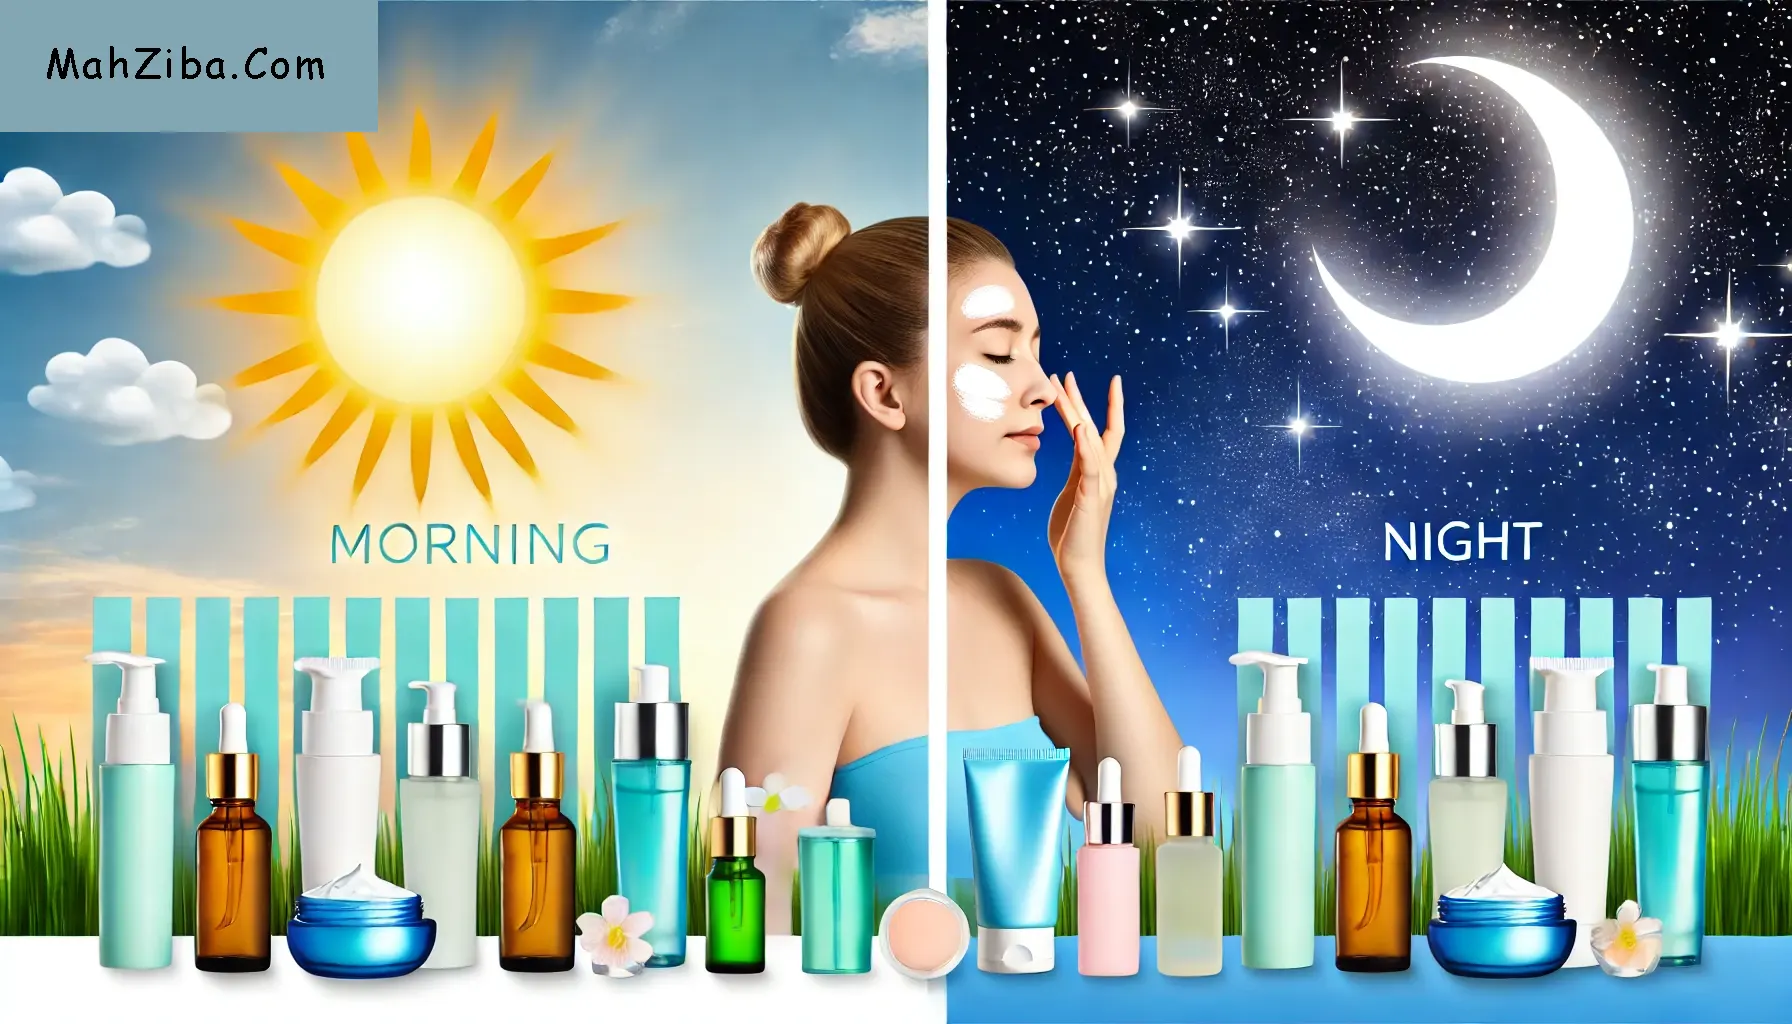 روتین پوستی شب ، روز ، بهترین روش ، ترتیب استفاده skin care routine , day and night , best order to use products